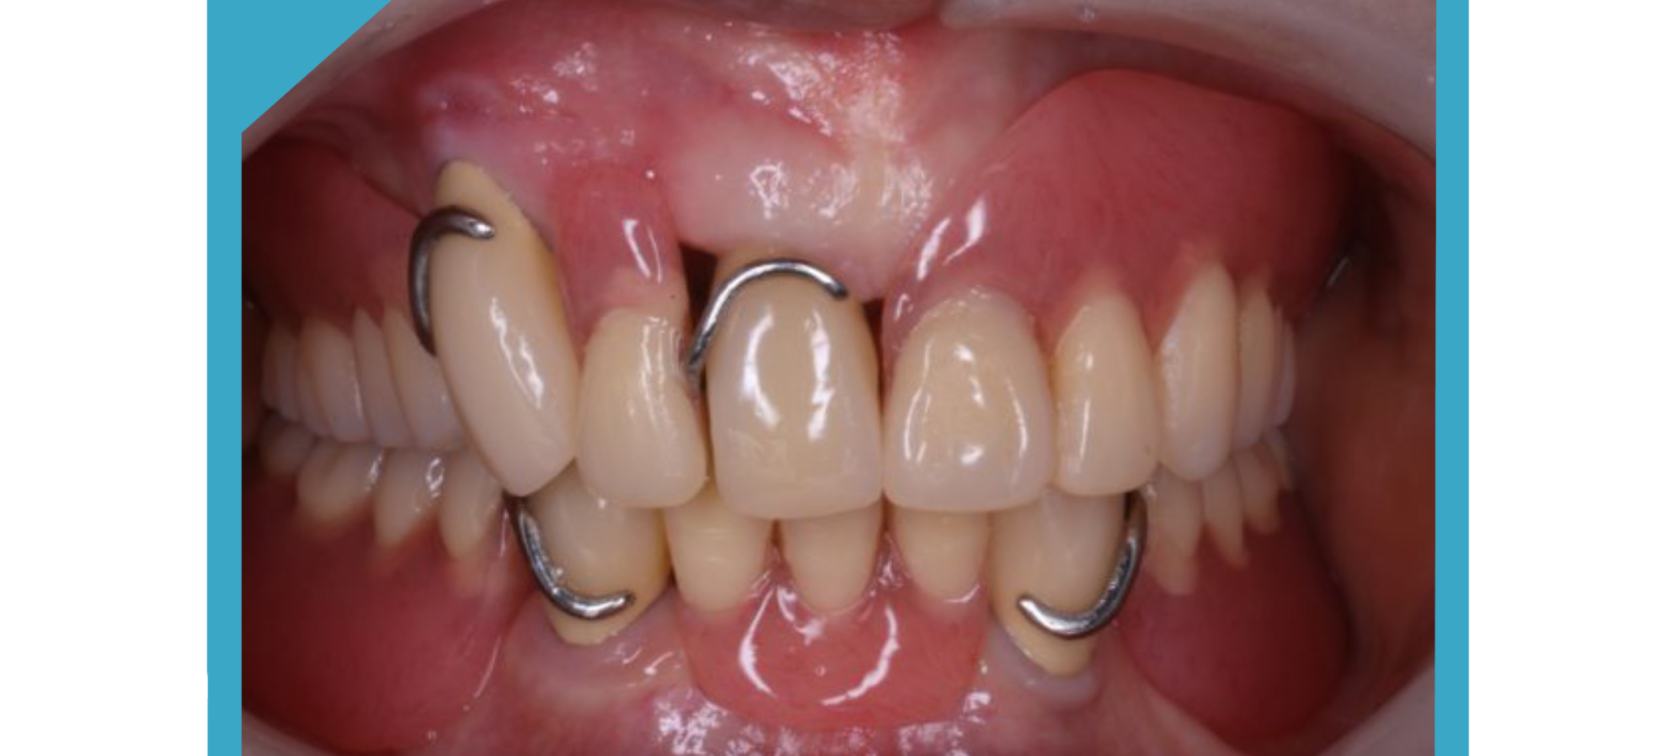 多くの方が抱えているお悩み「バネが見える入れ歯はいや」を解決します